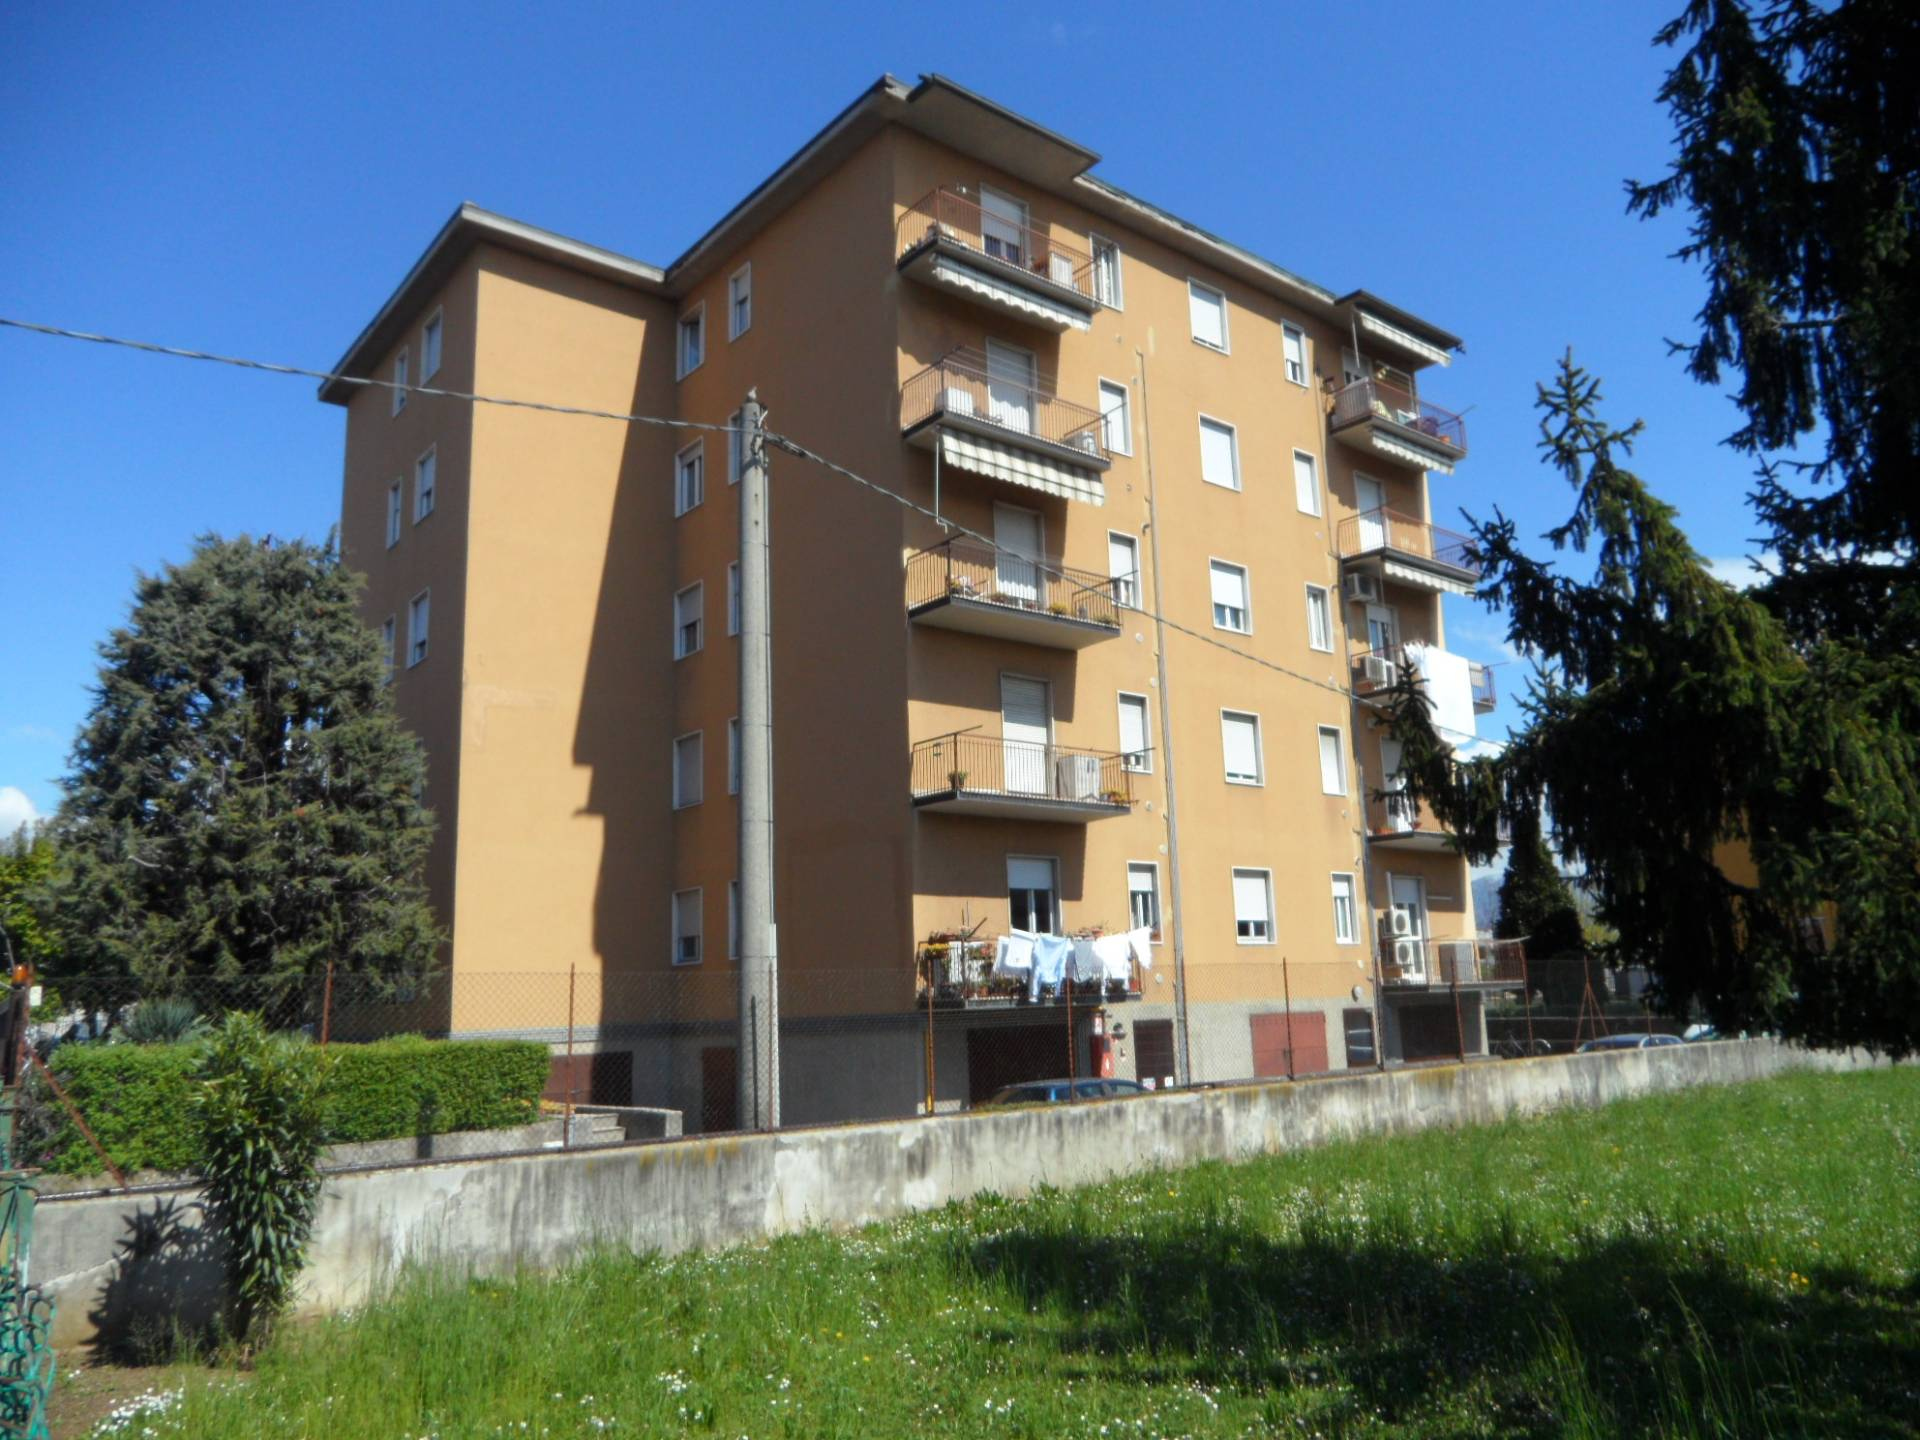 Appartamento in vendita a Grassobbio, 2 locali, prezzo € 70.000 | PortaleAgenzieImmobiliari.it